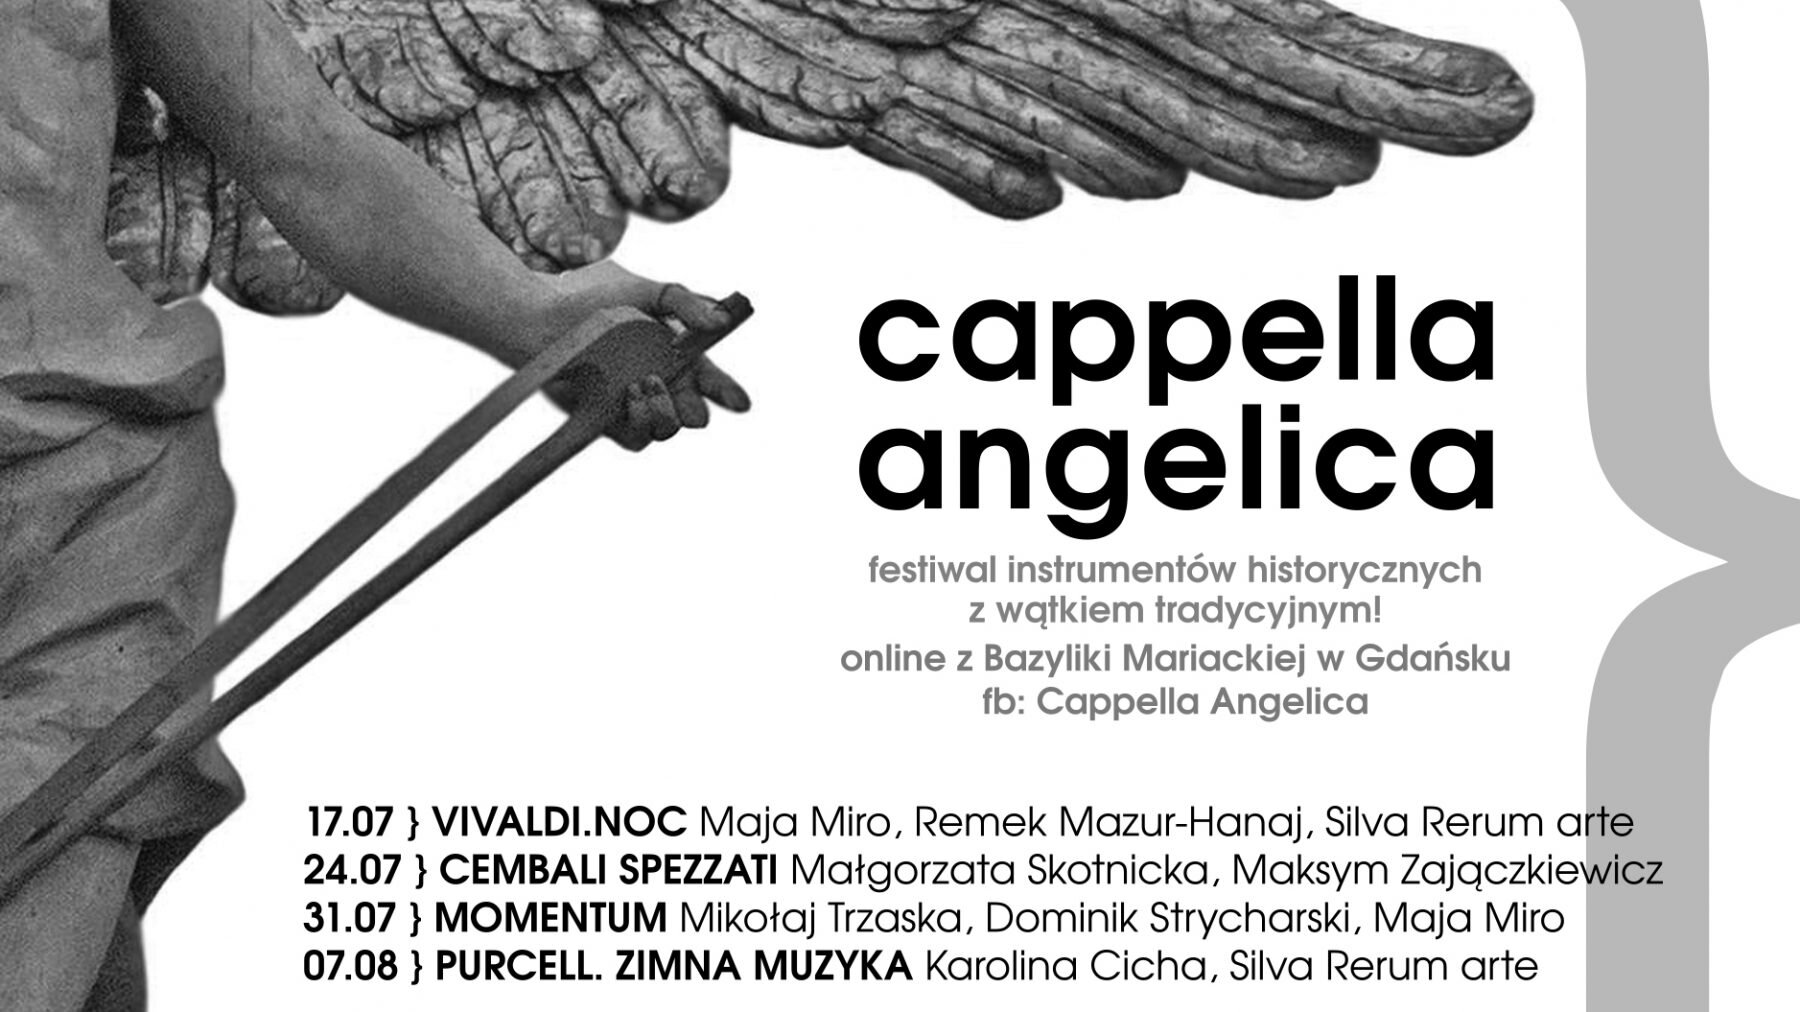 Cappella Angelica online